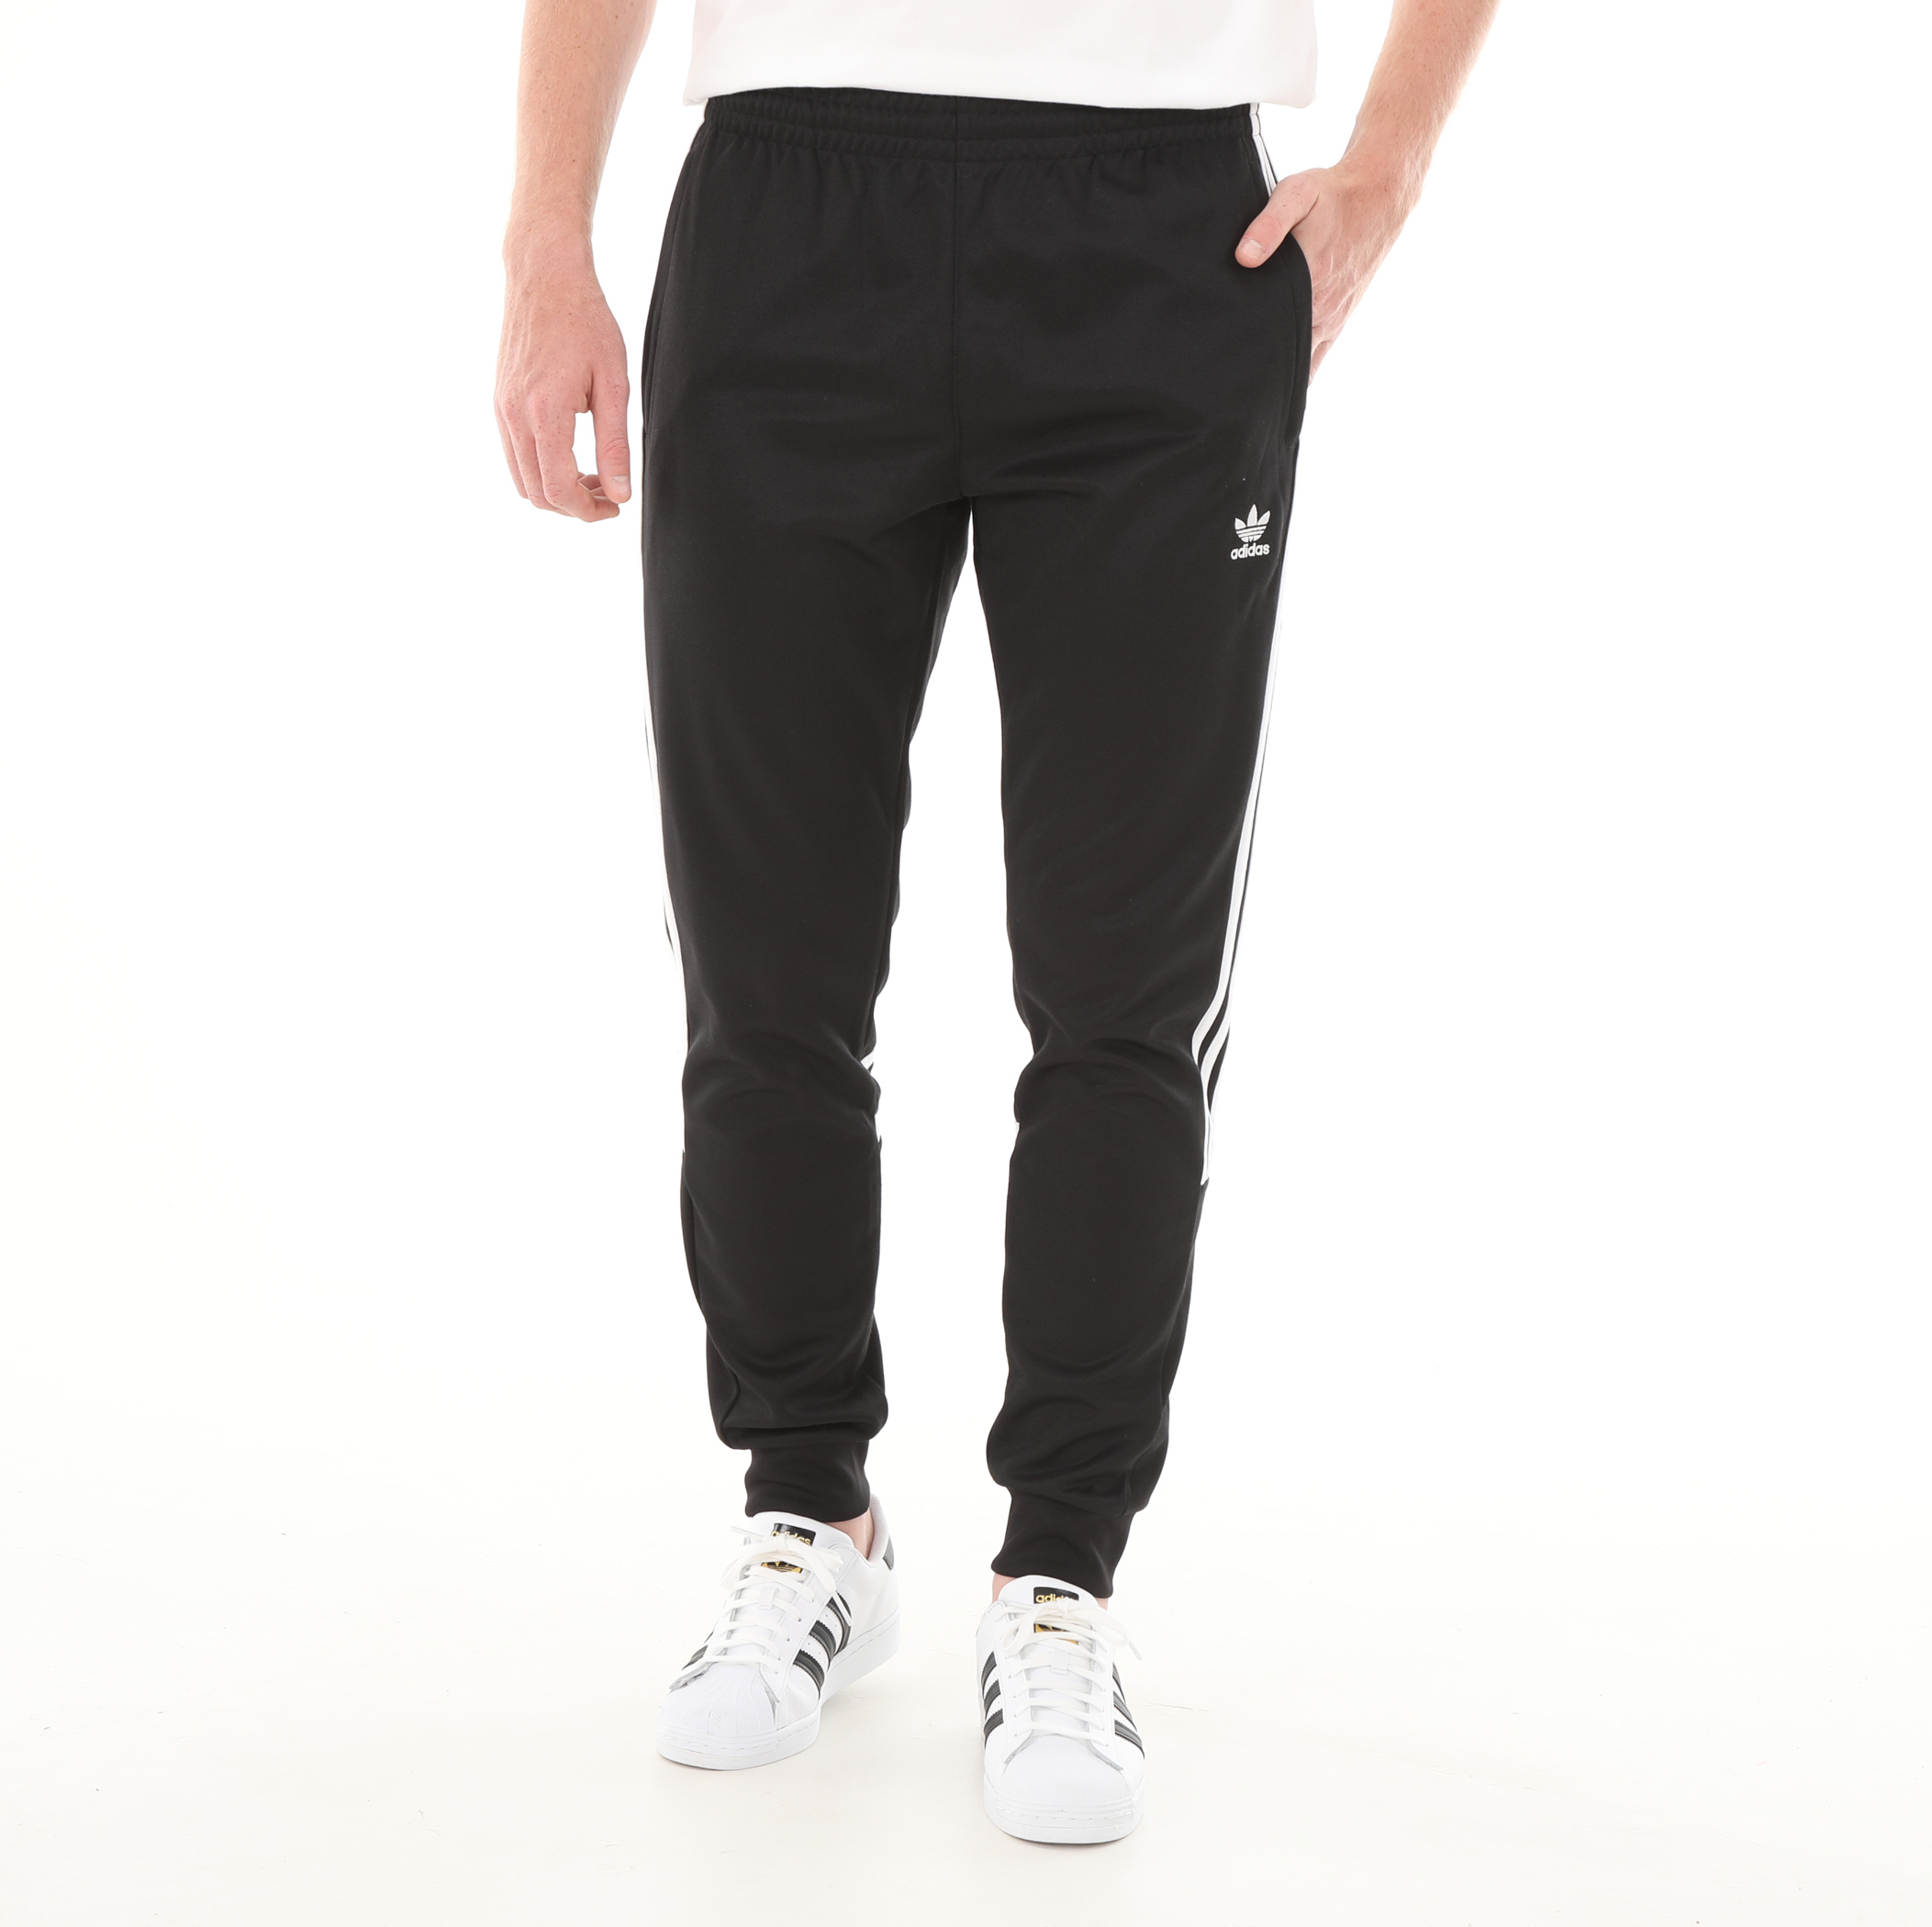 Мужские спортивные штаны adidas Cutline Pant Black